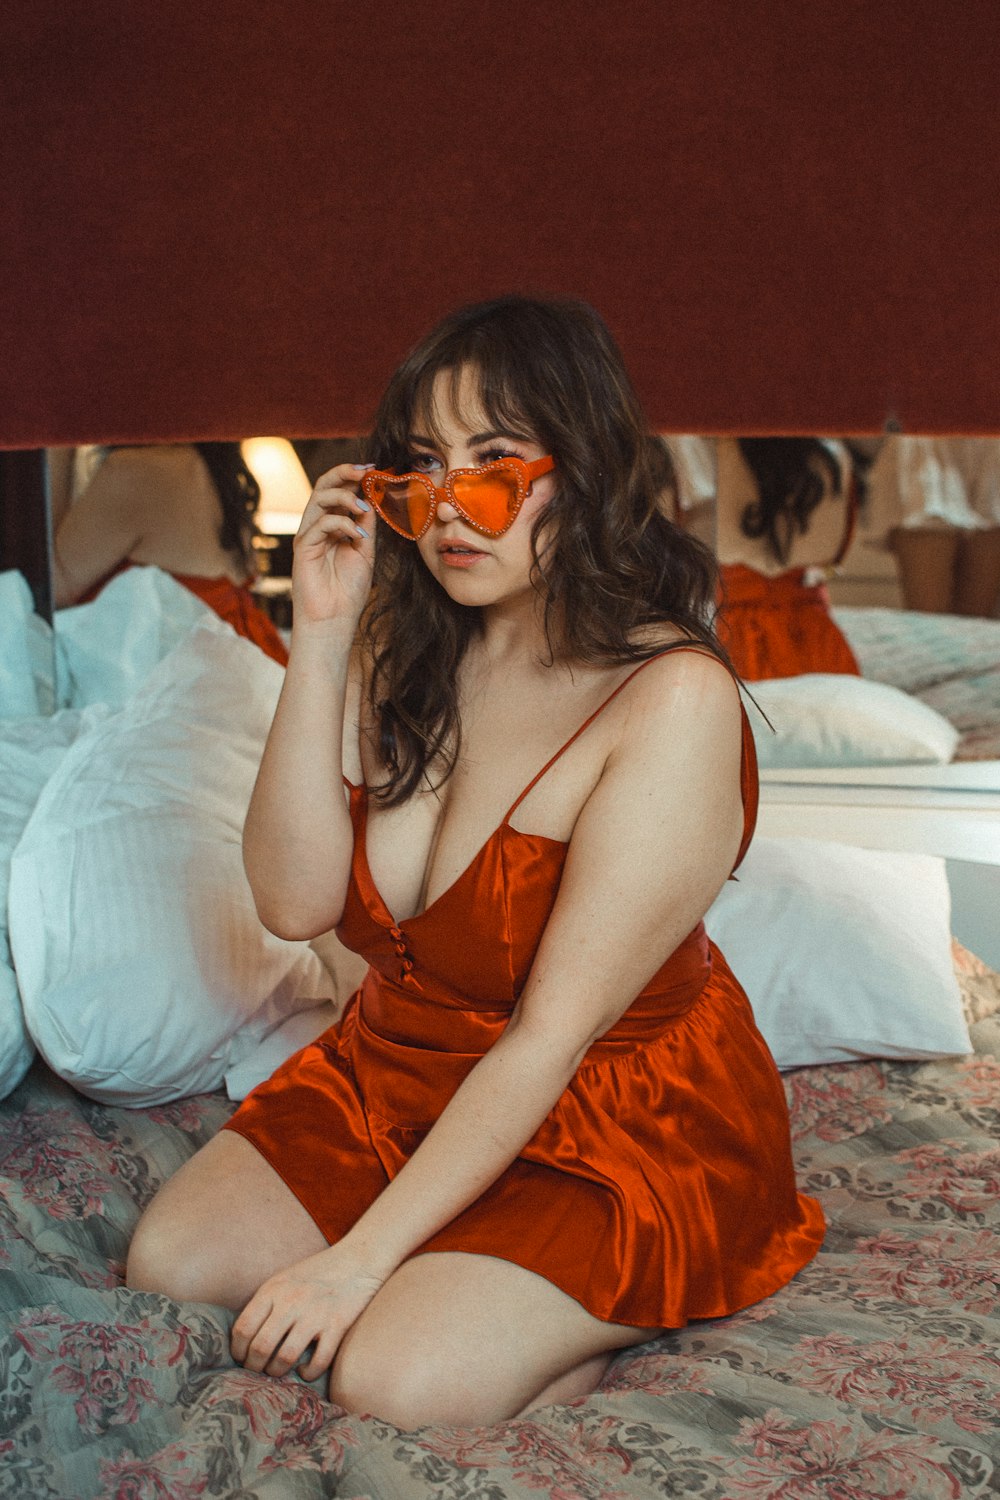 Frau mit orangefarbenem Spaghettiträgerkleid sitzt auf dem Bett